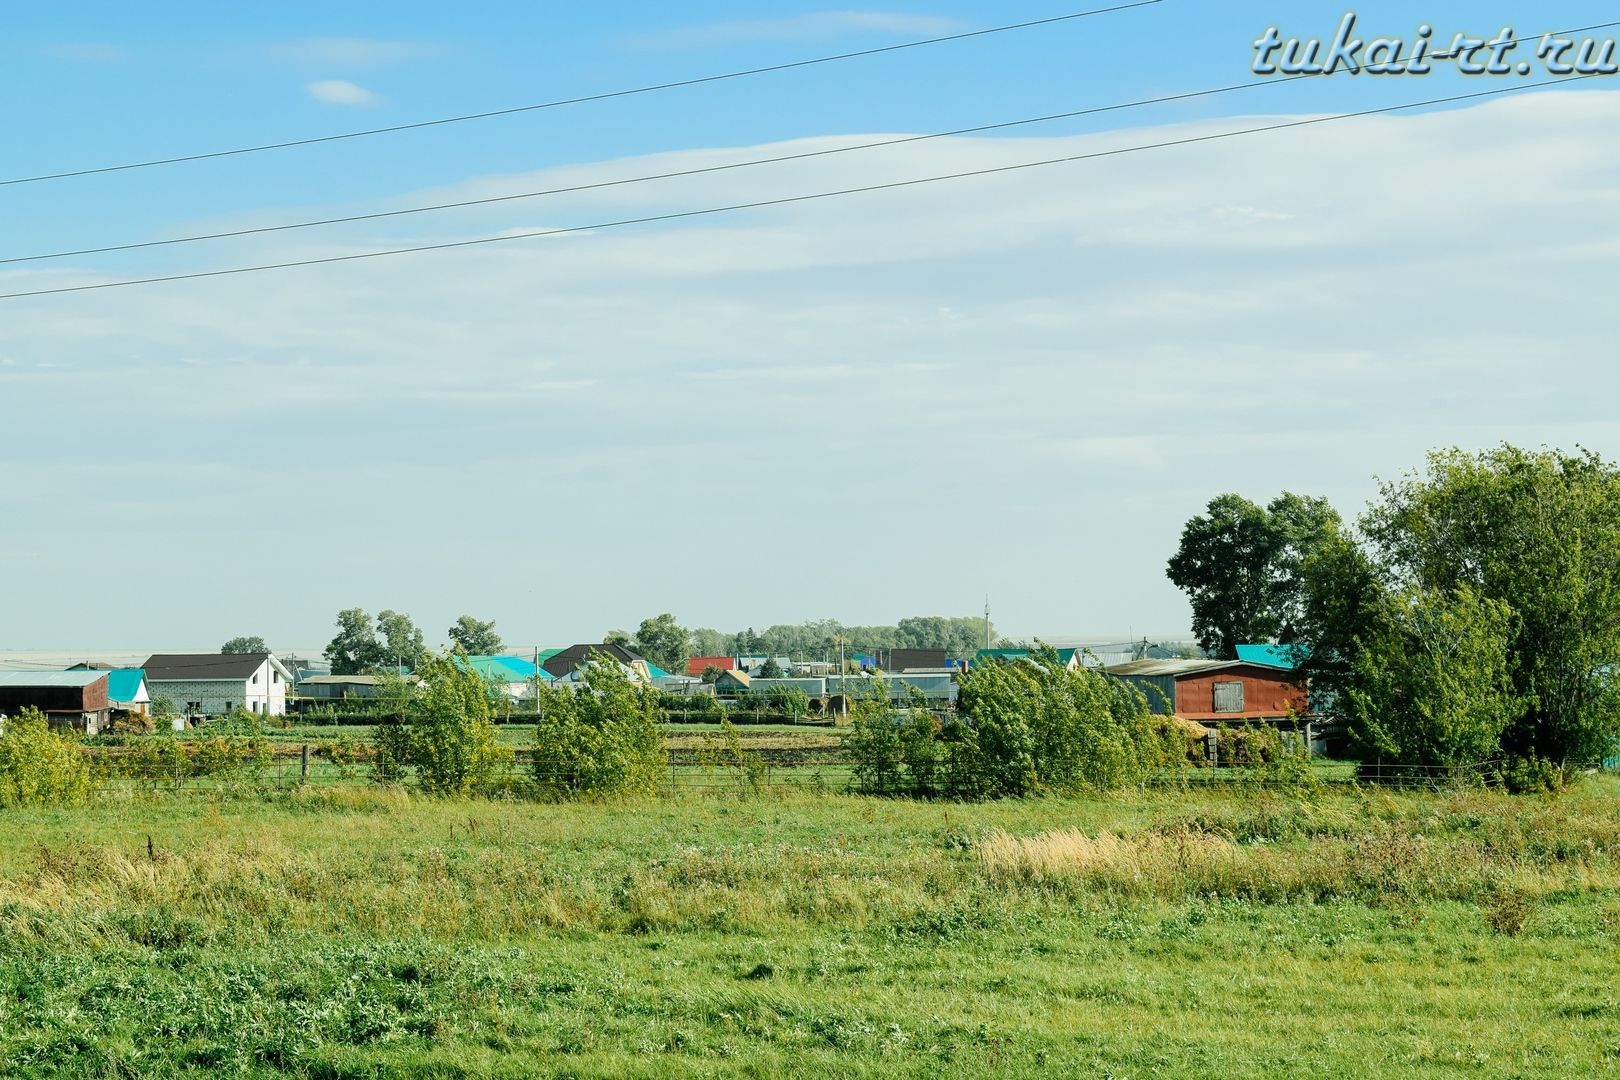 Фотоэкскурс по селу Старое Абдулово Тукаевского района ФОТО